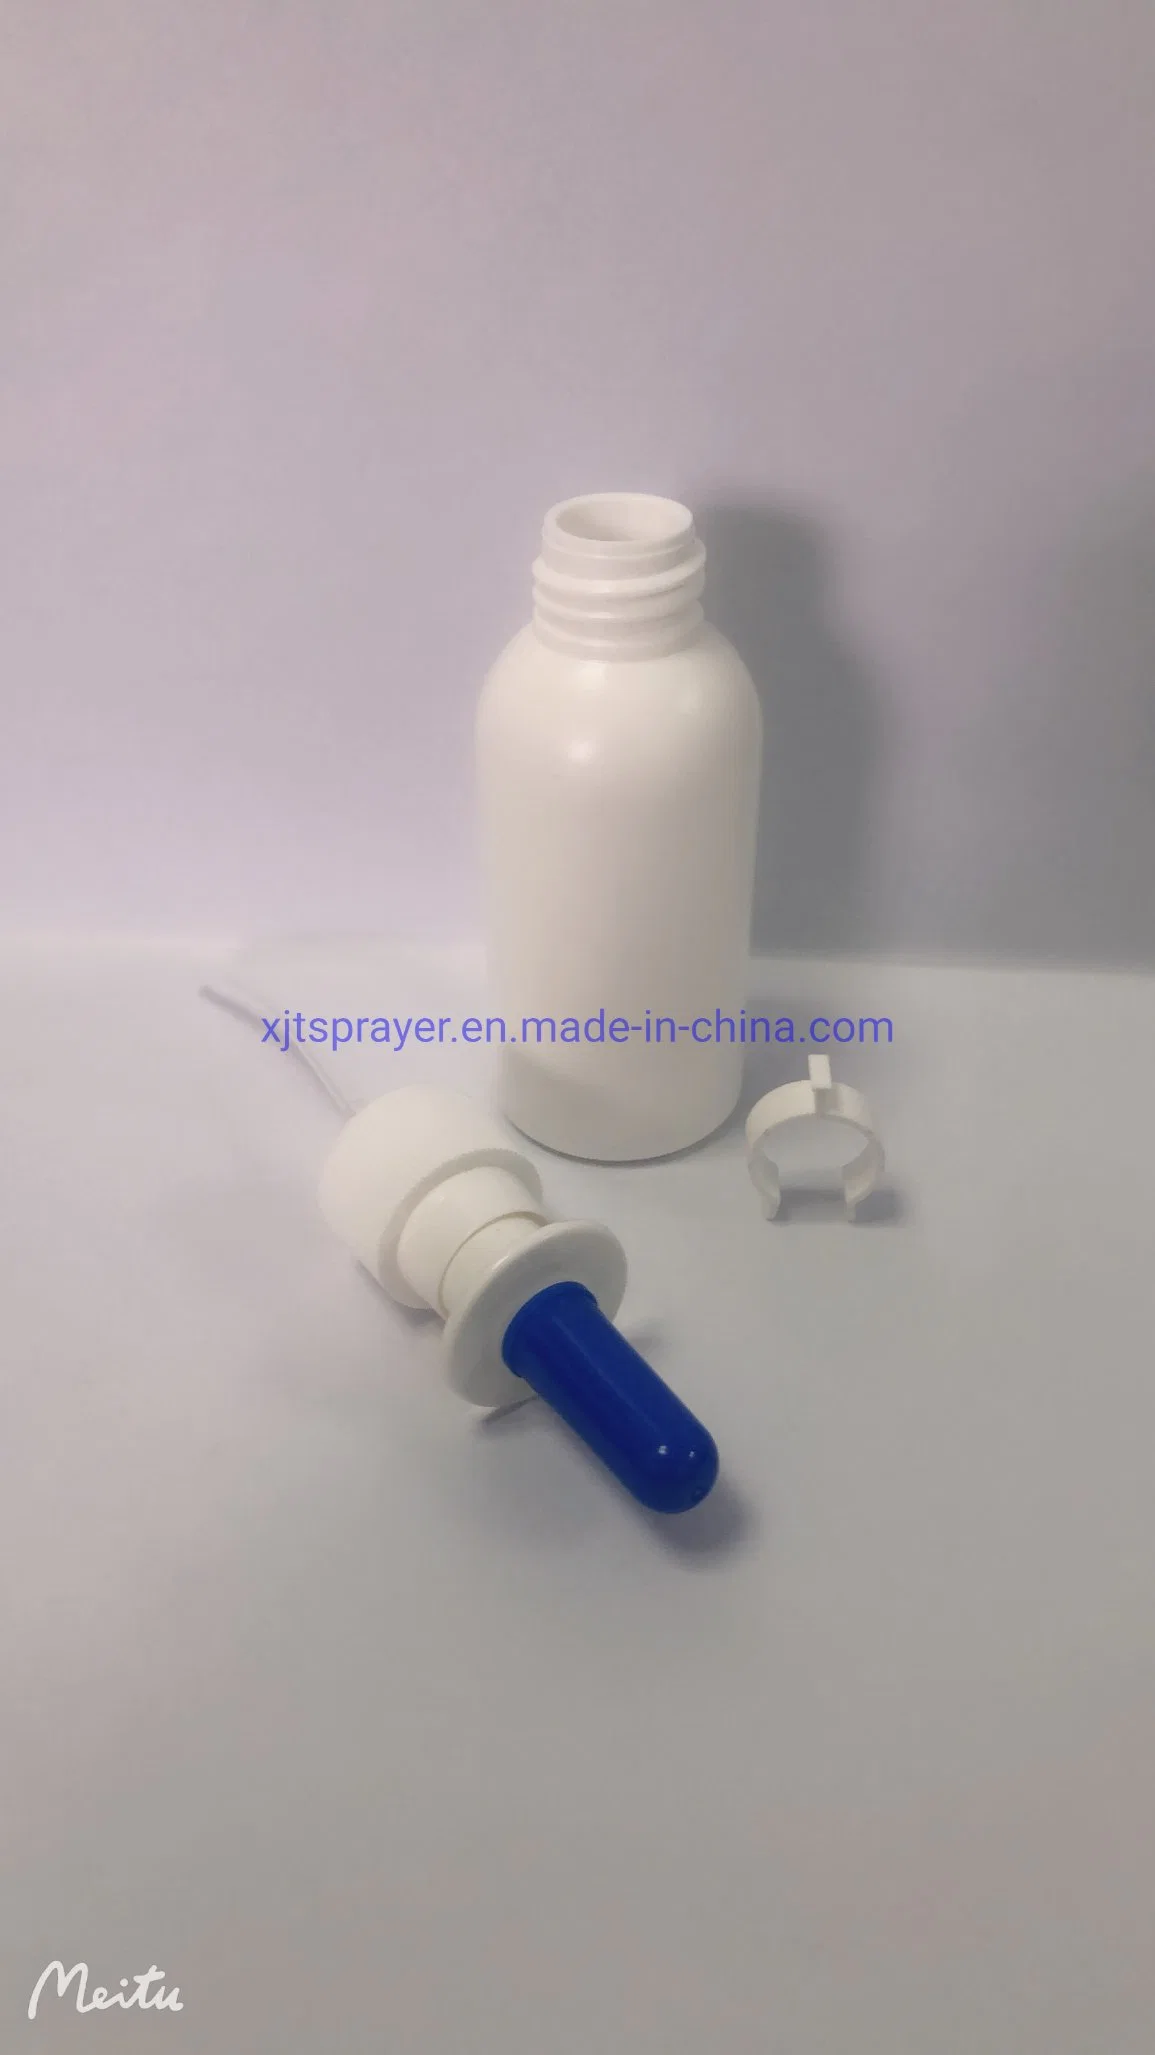 10ml 15ml 20ml 30ml 50ml Plastic Container Plastic Vial Plastic Bottle for Liquid Drugs OTC&Healthcare Packing